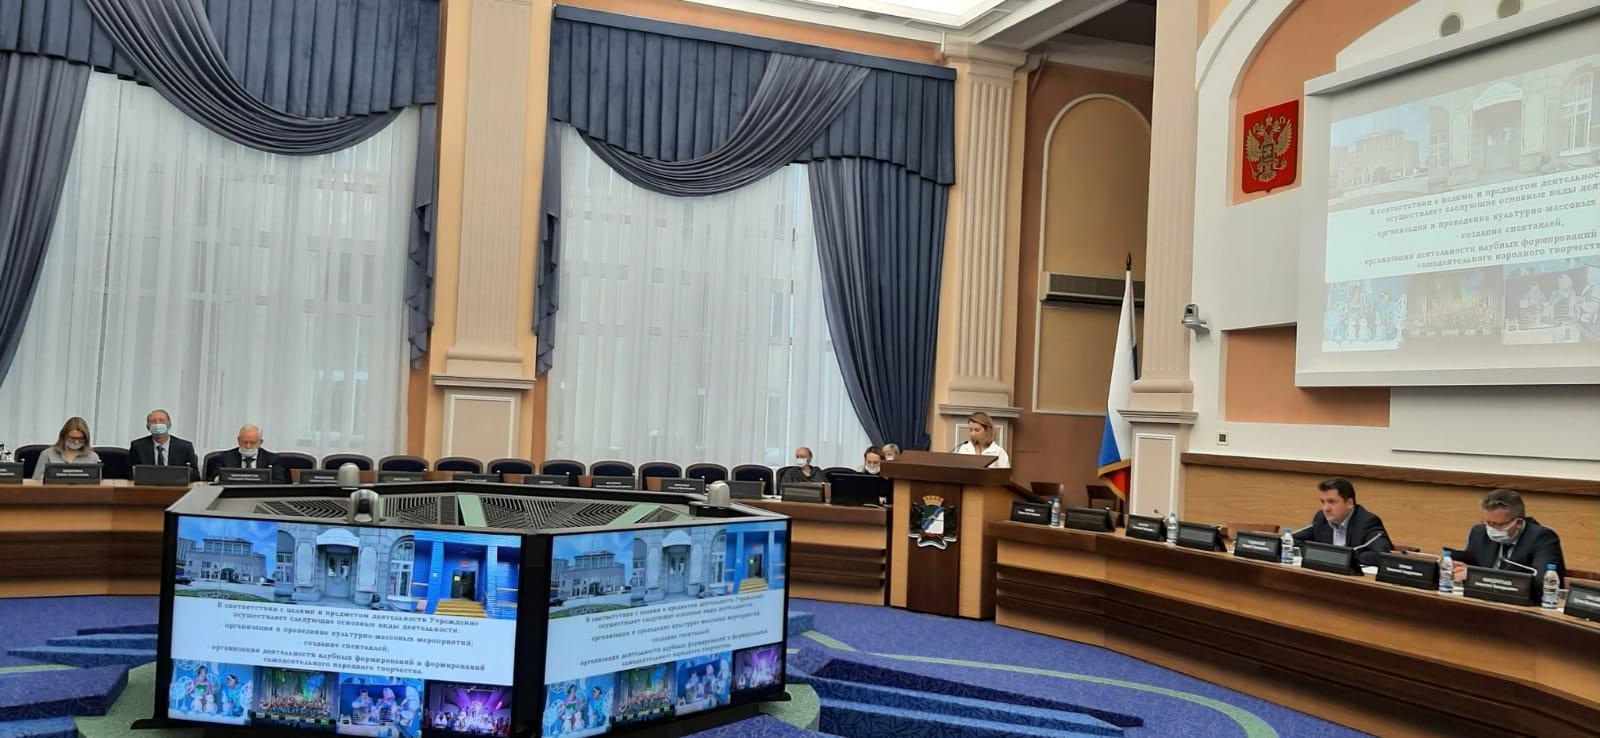 Фото В горсовете Новосибирска обсудили исполнение бюджета в 2021 году 3